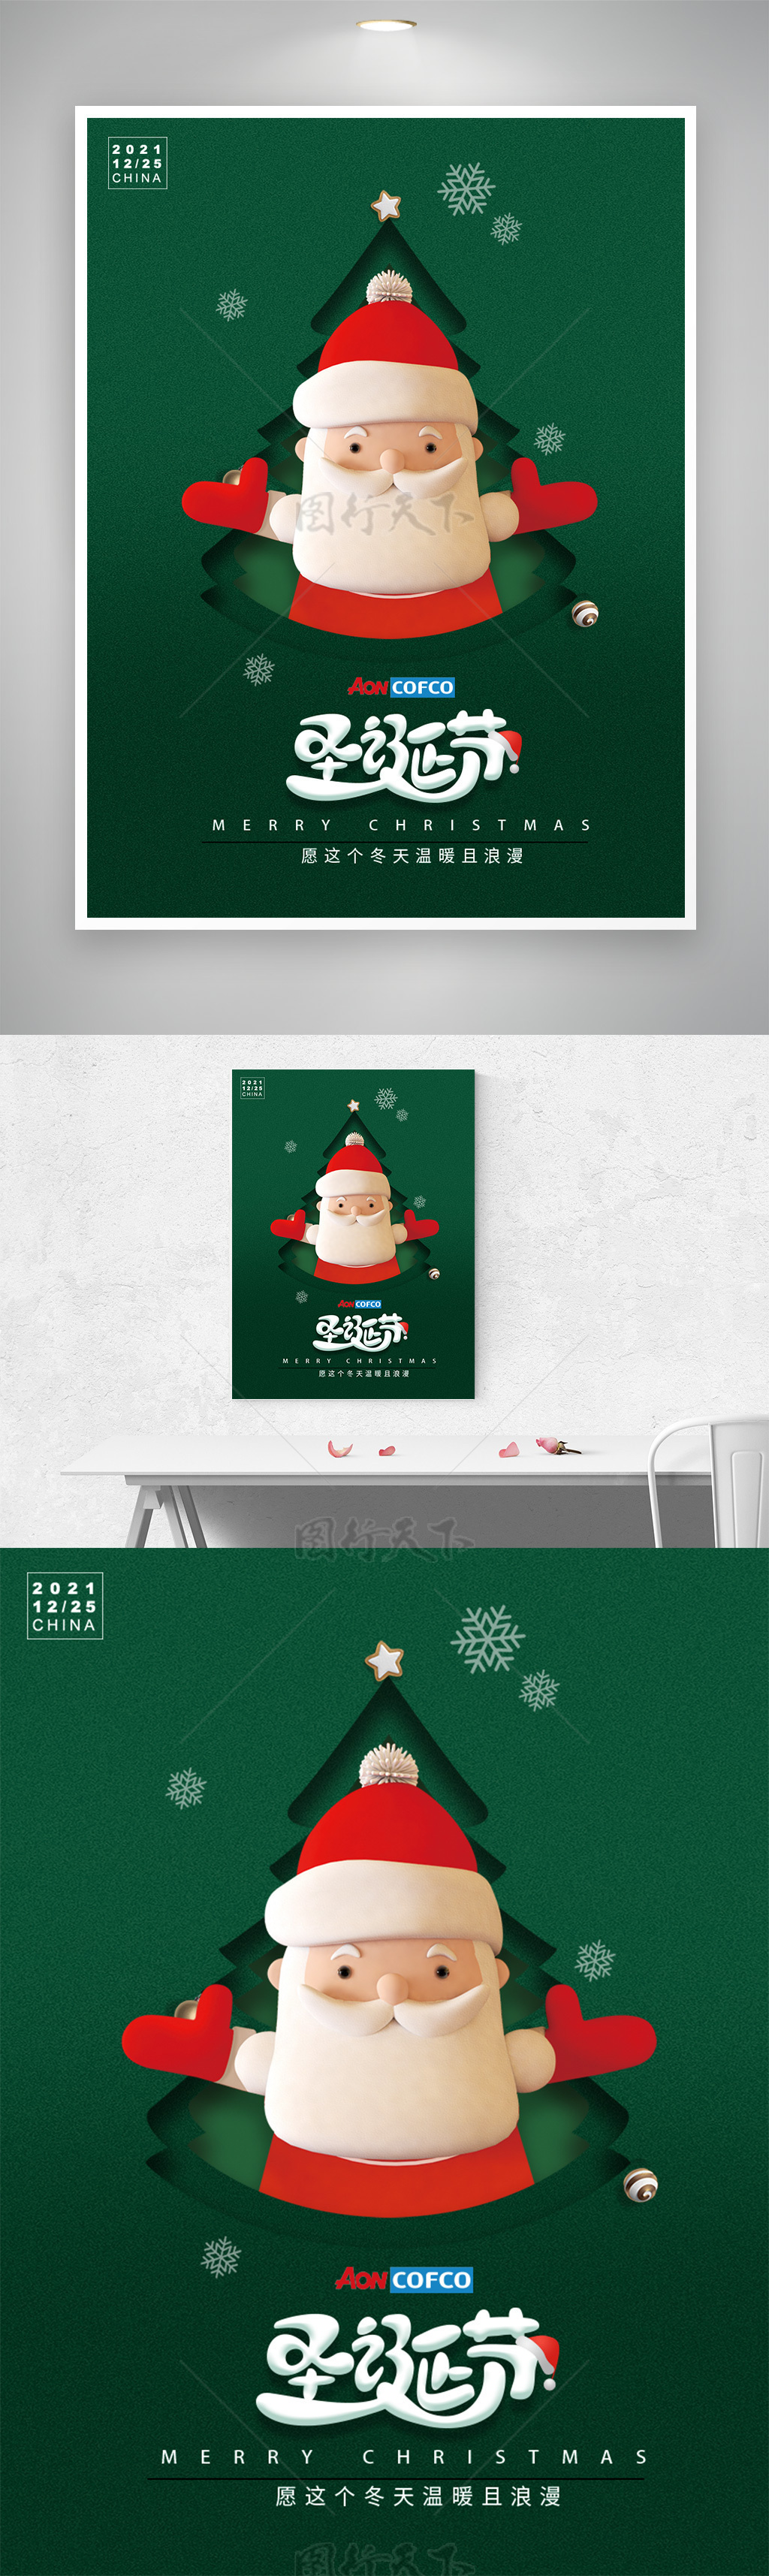 电商圣诞节海报模板